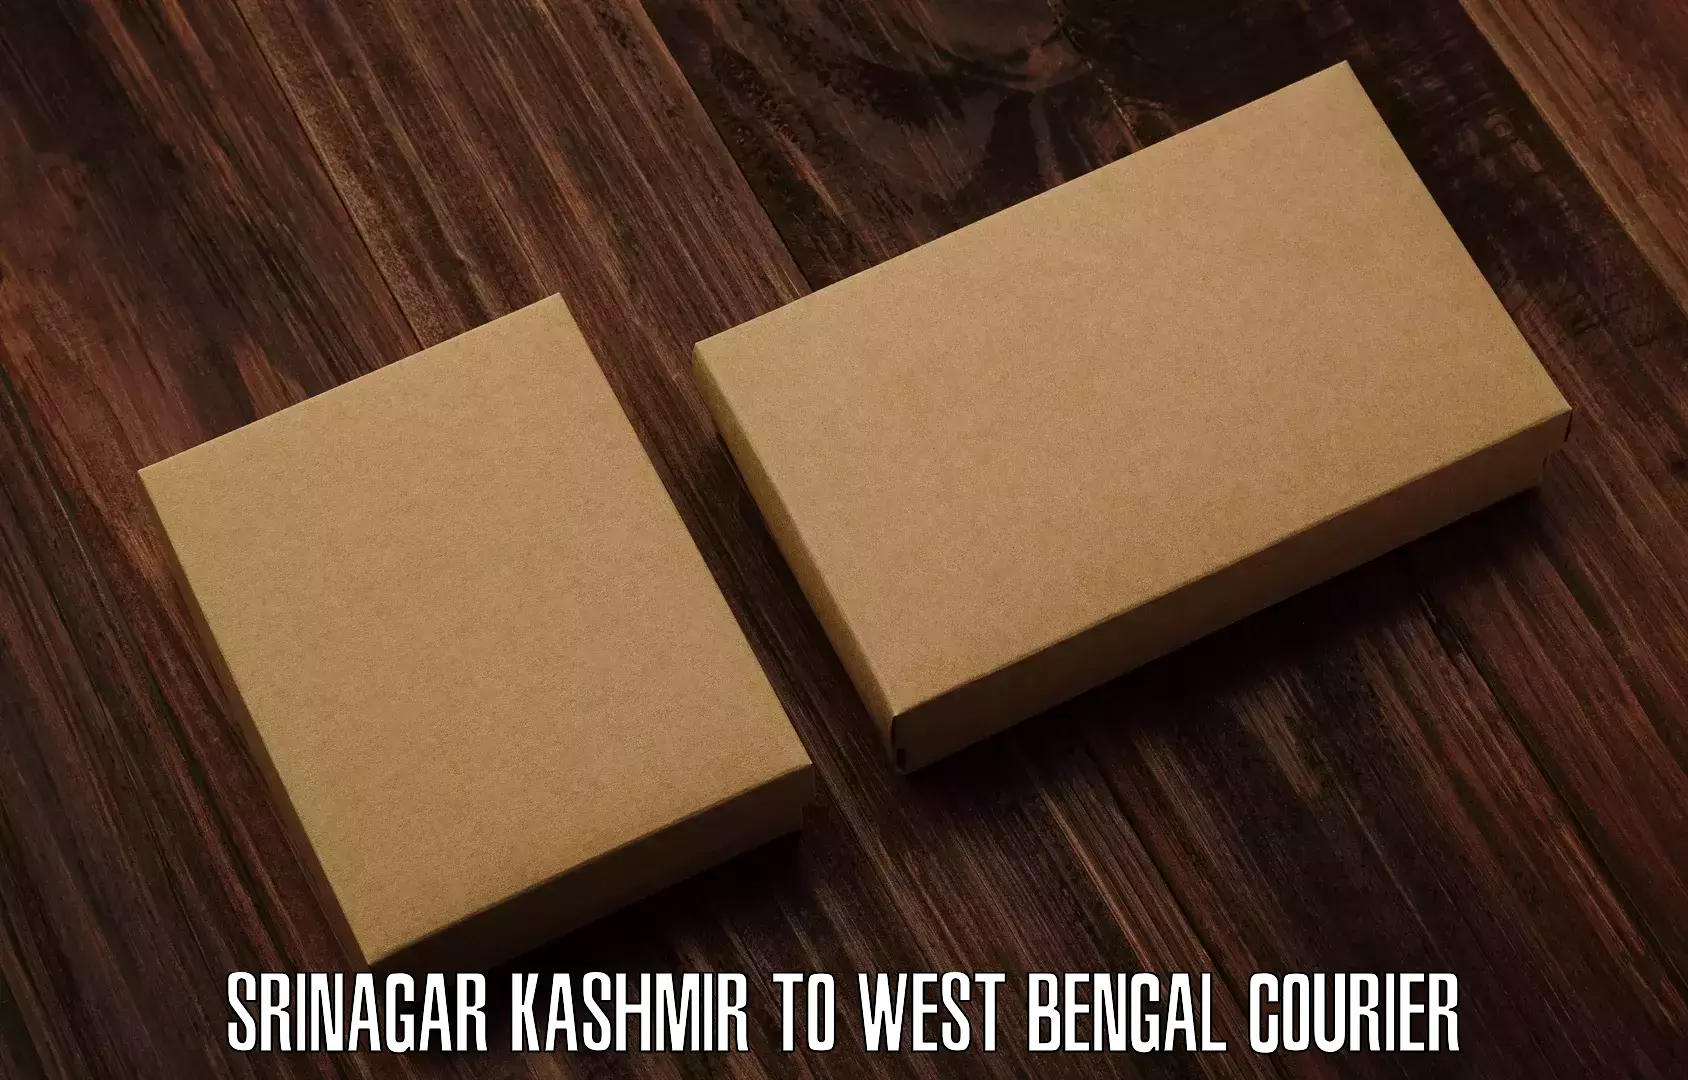 Courier service partnerships in Srinagar Kashmir to Panagarh